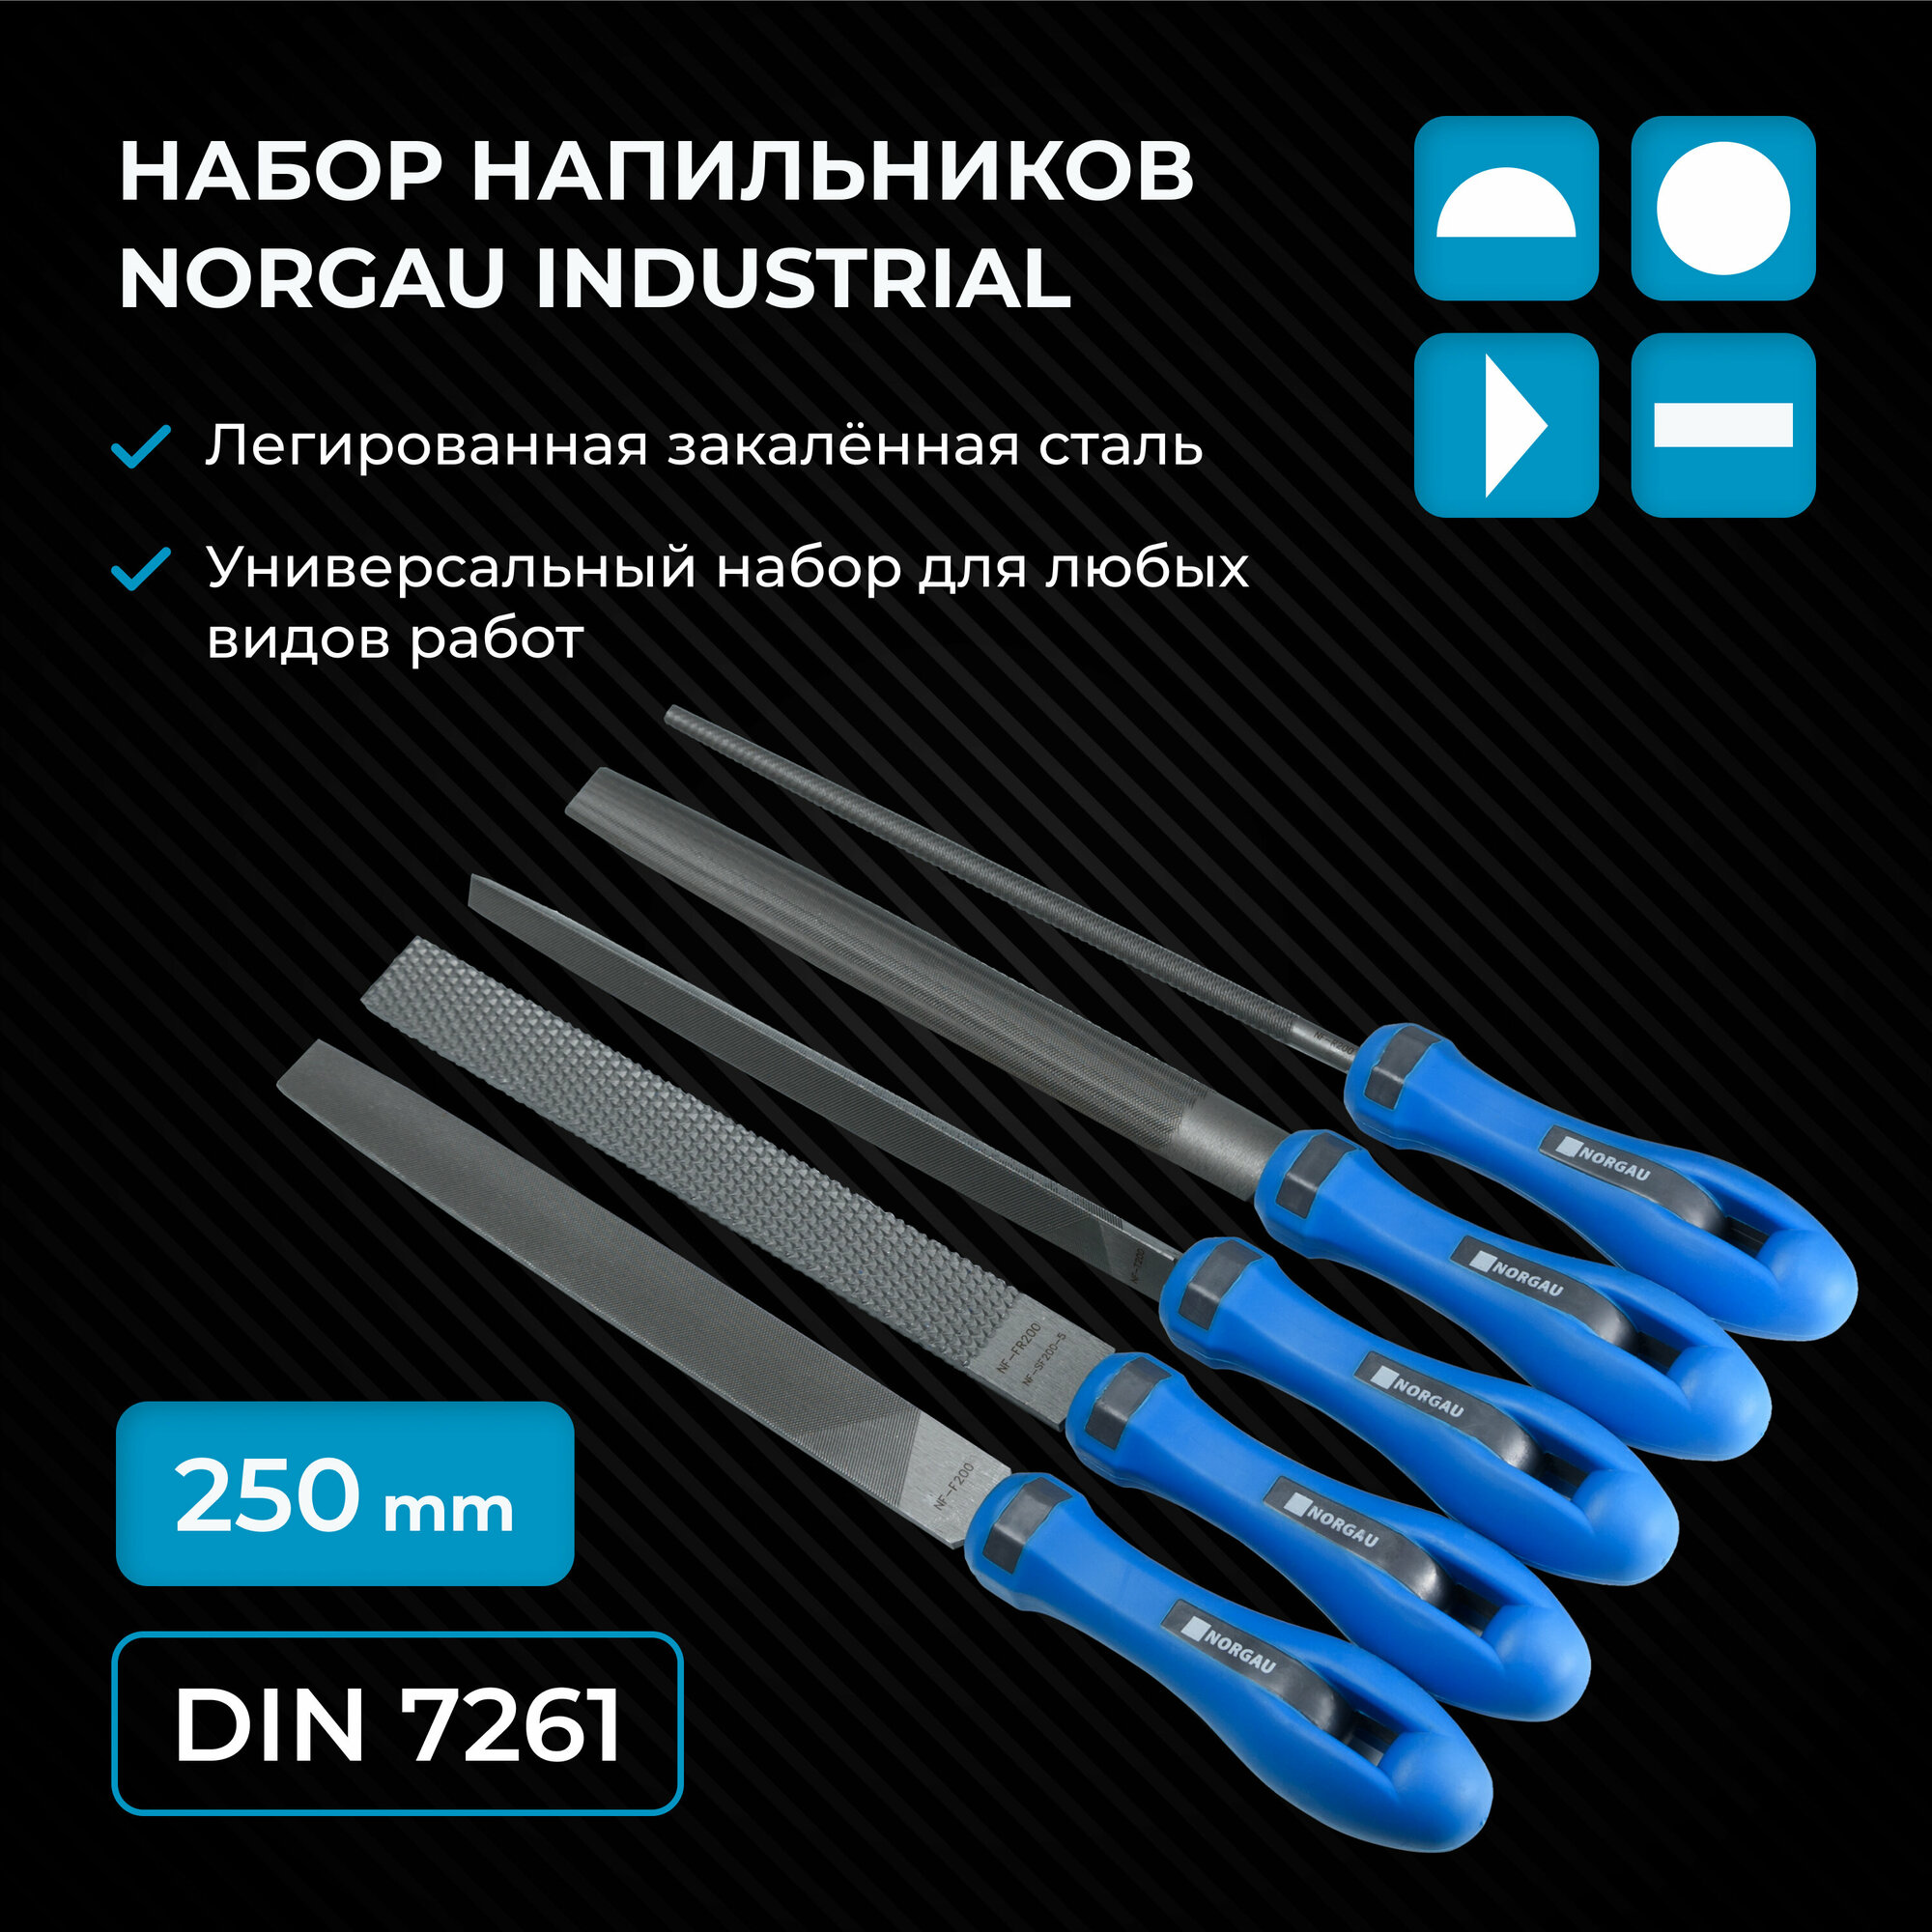 Набор напильников по металлу NORGAU Industrial 250 с двухкомпонентной рукояткой в сумке-скатке 5 ук